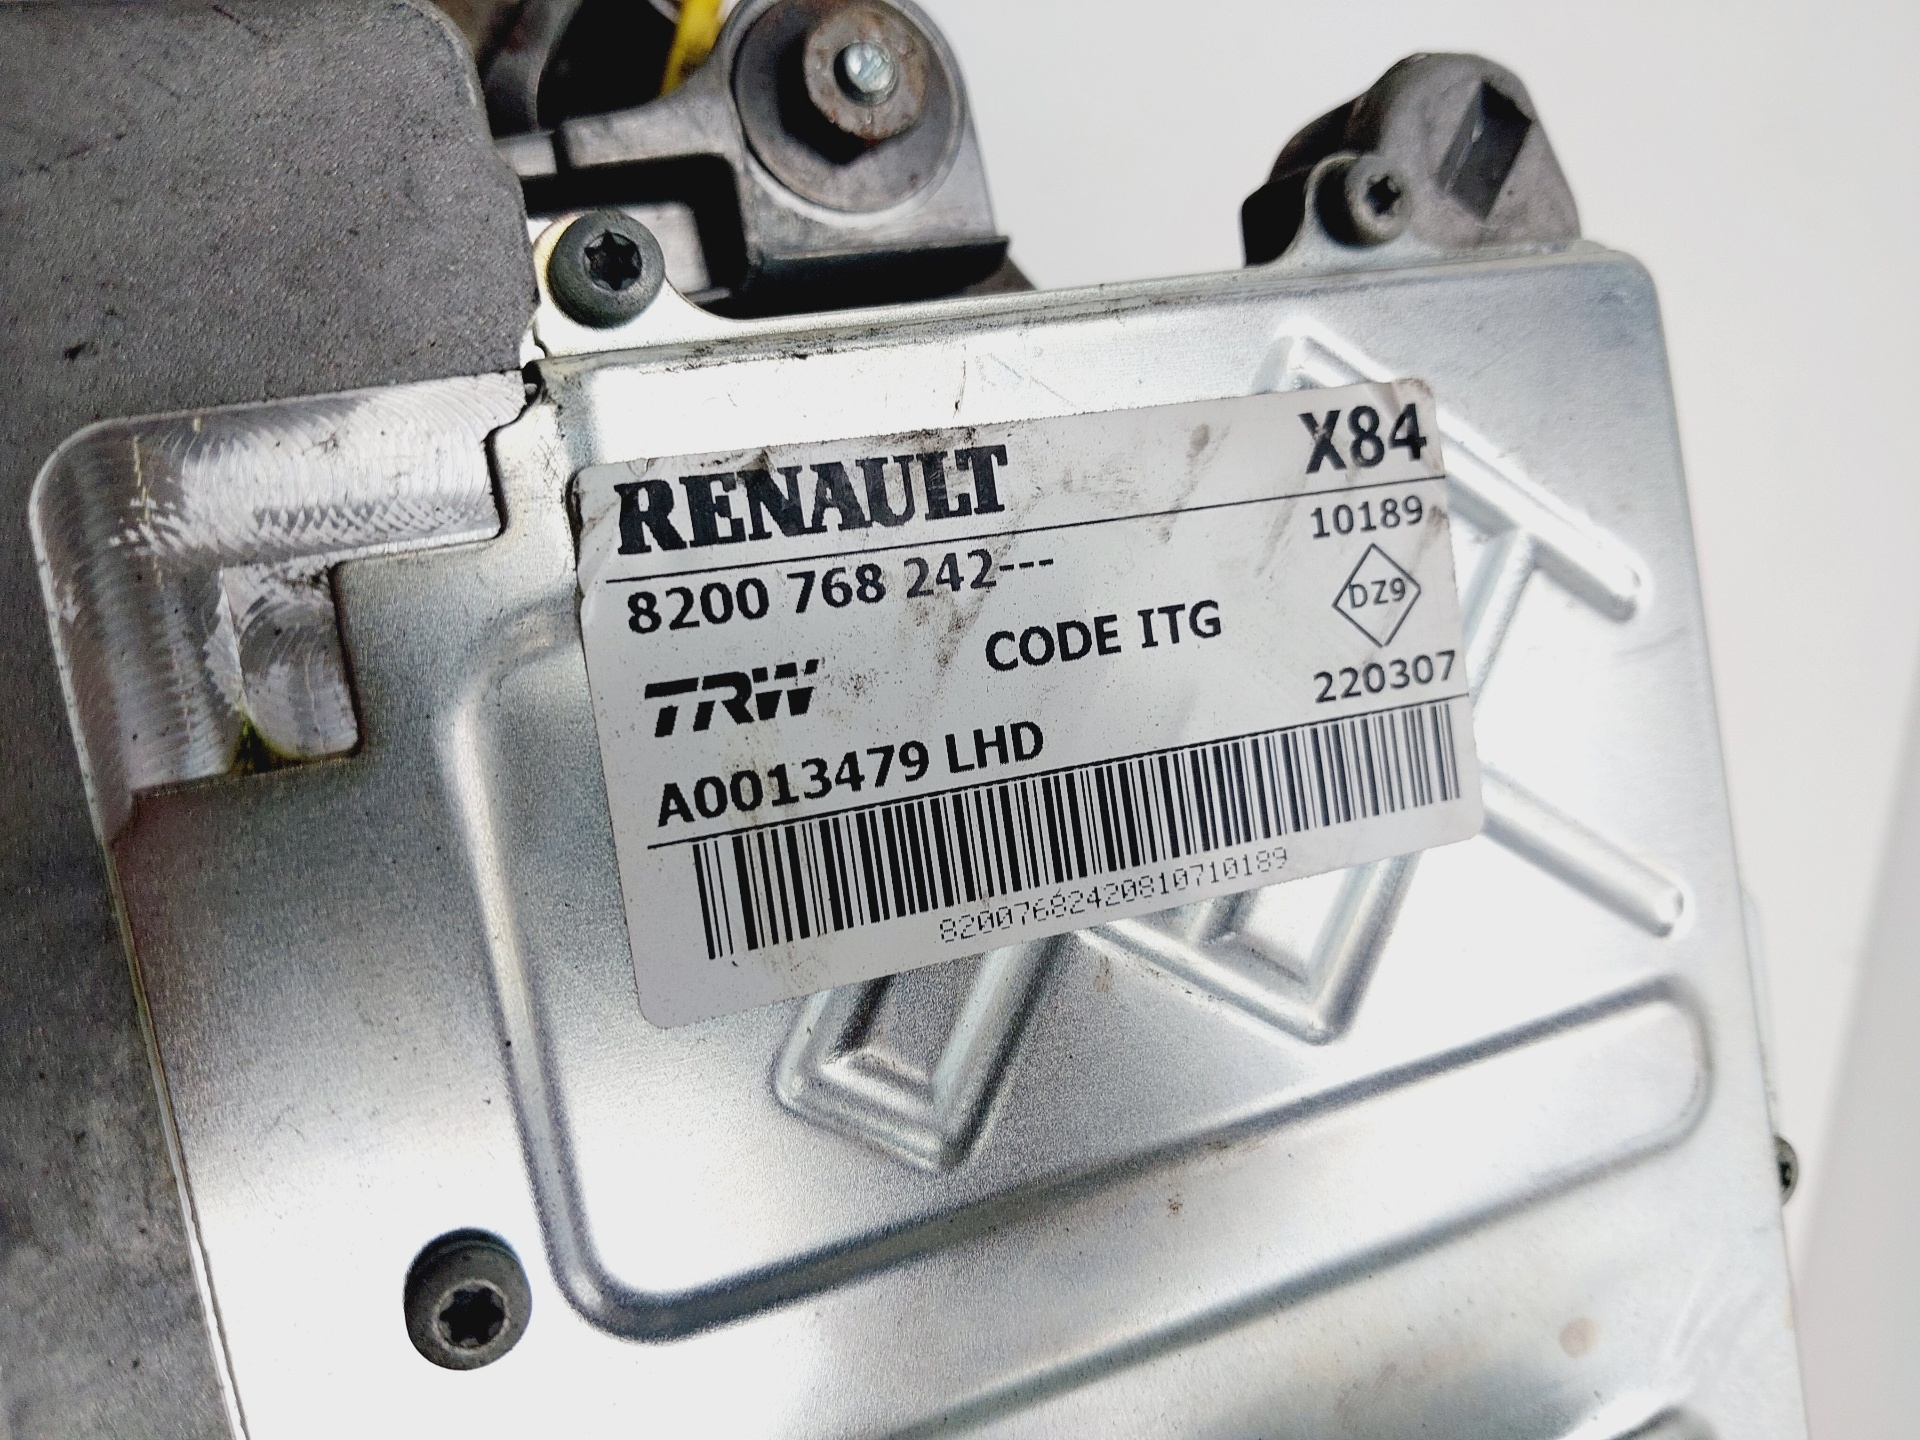 RENAULT Megane 3 generation (2008-2020) Steering Column Mechanism 8200768242 25190172